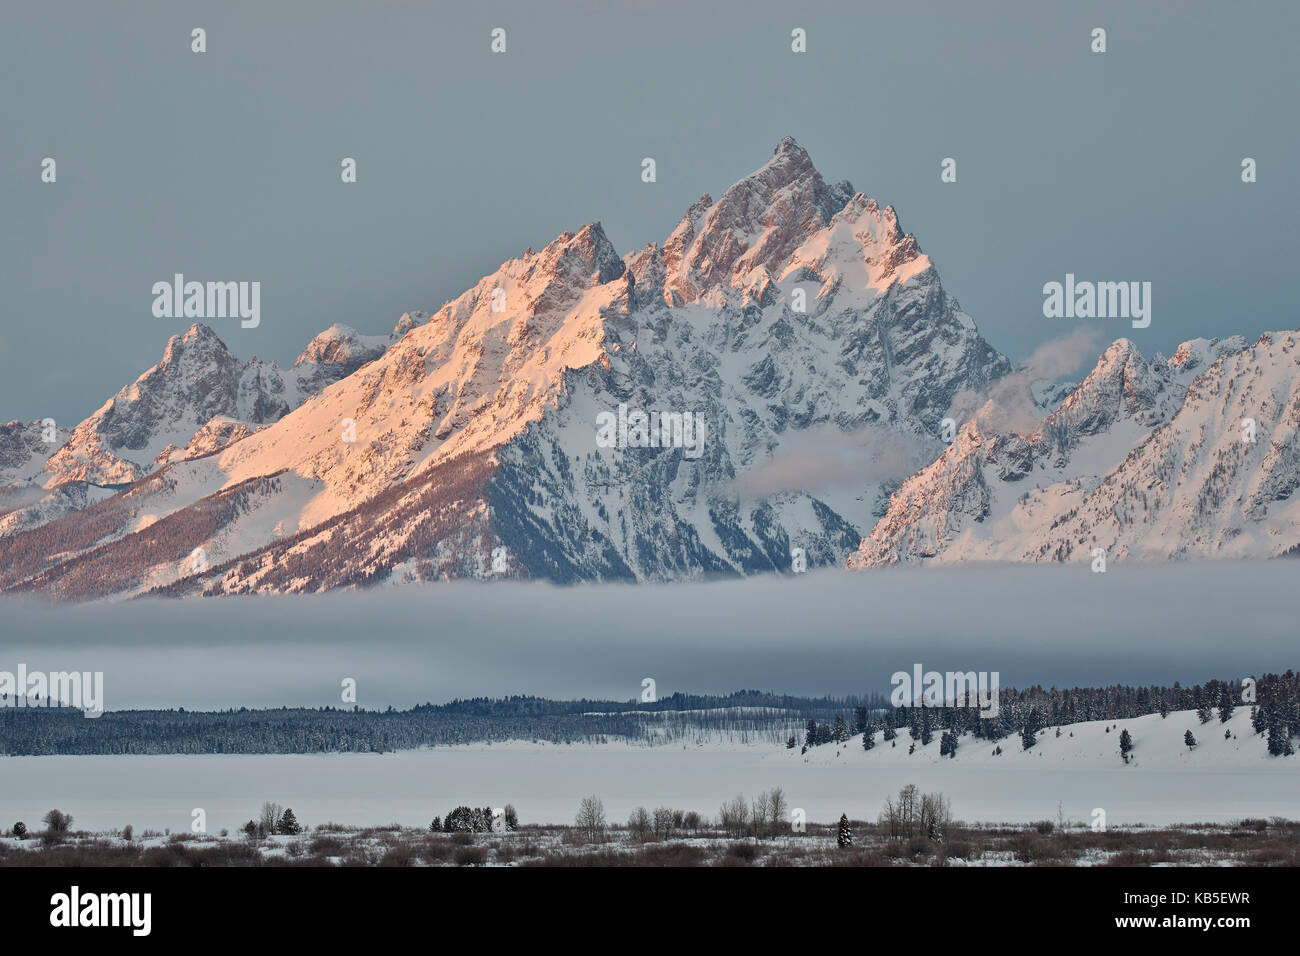 Montare moran in inverno con neve, Grand Teton National Park, Wyoming negli Stati Uniti d'America, America del nord Foto Stock